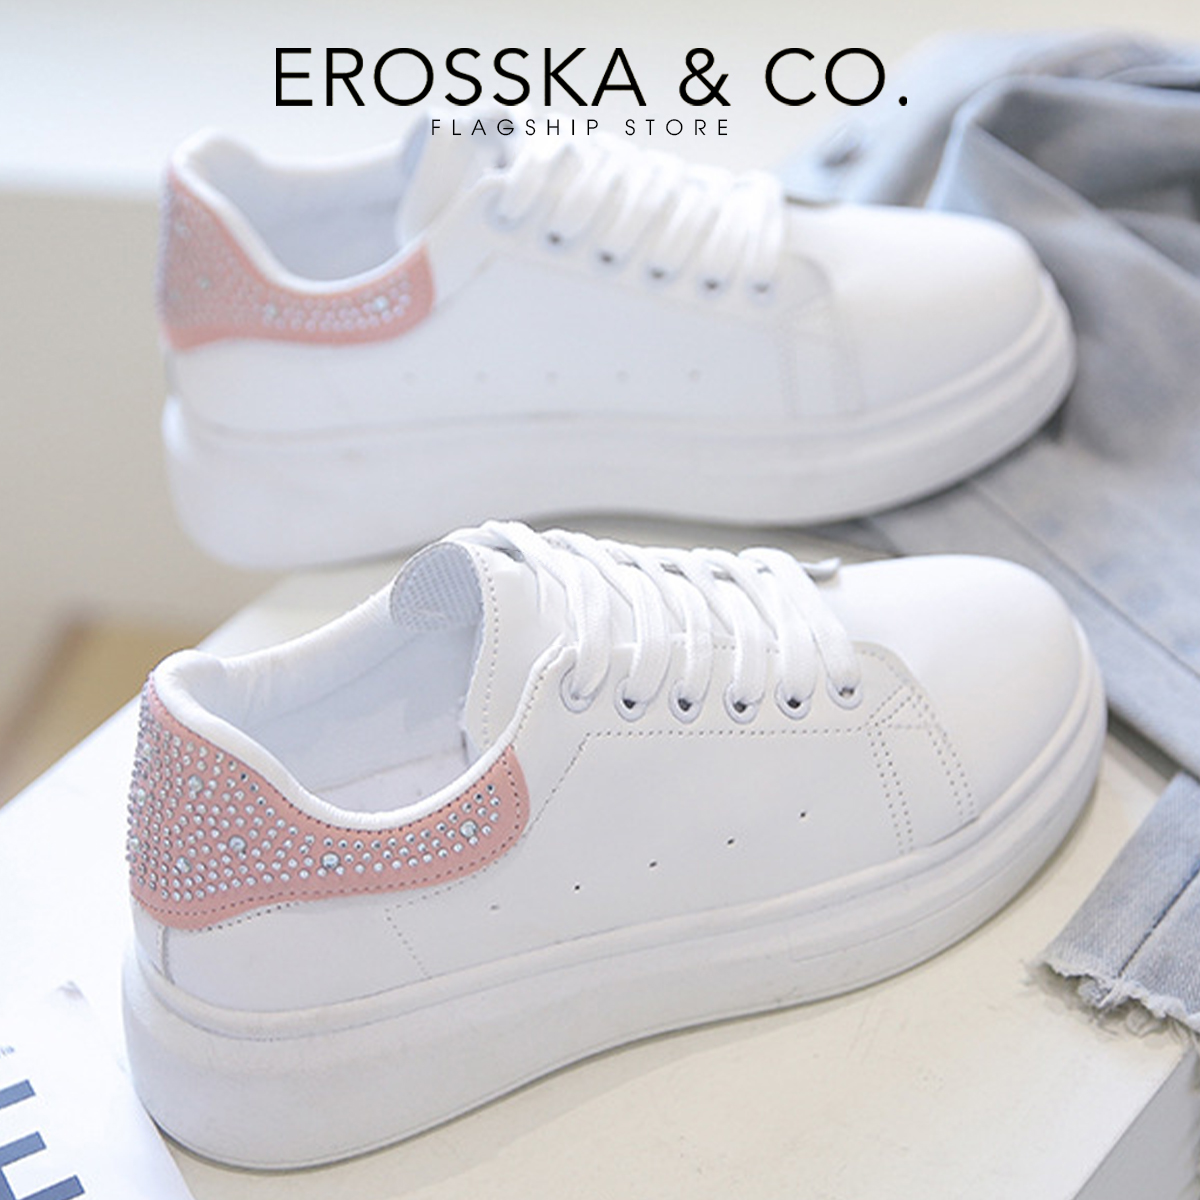 Erosska - Giày sneaker nữ đi học kiểu dáng basic trẻ trung  - GS008